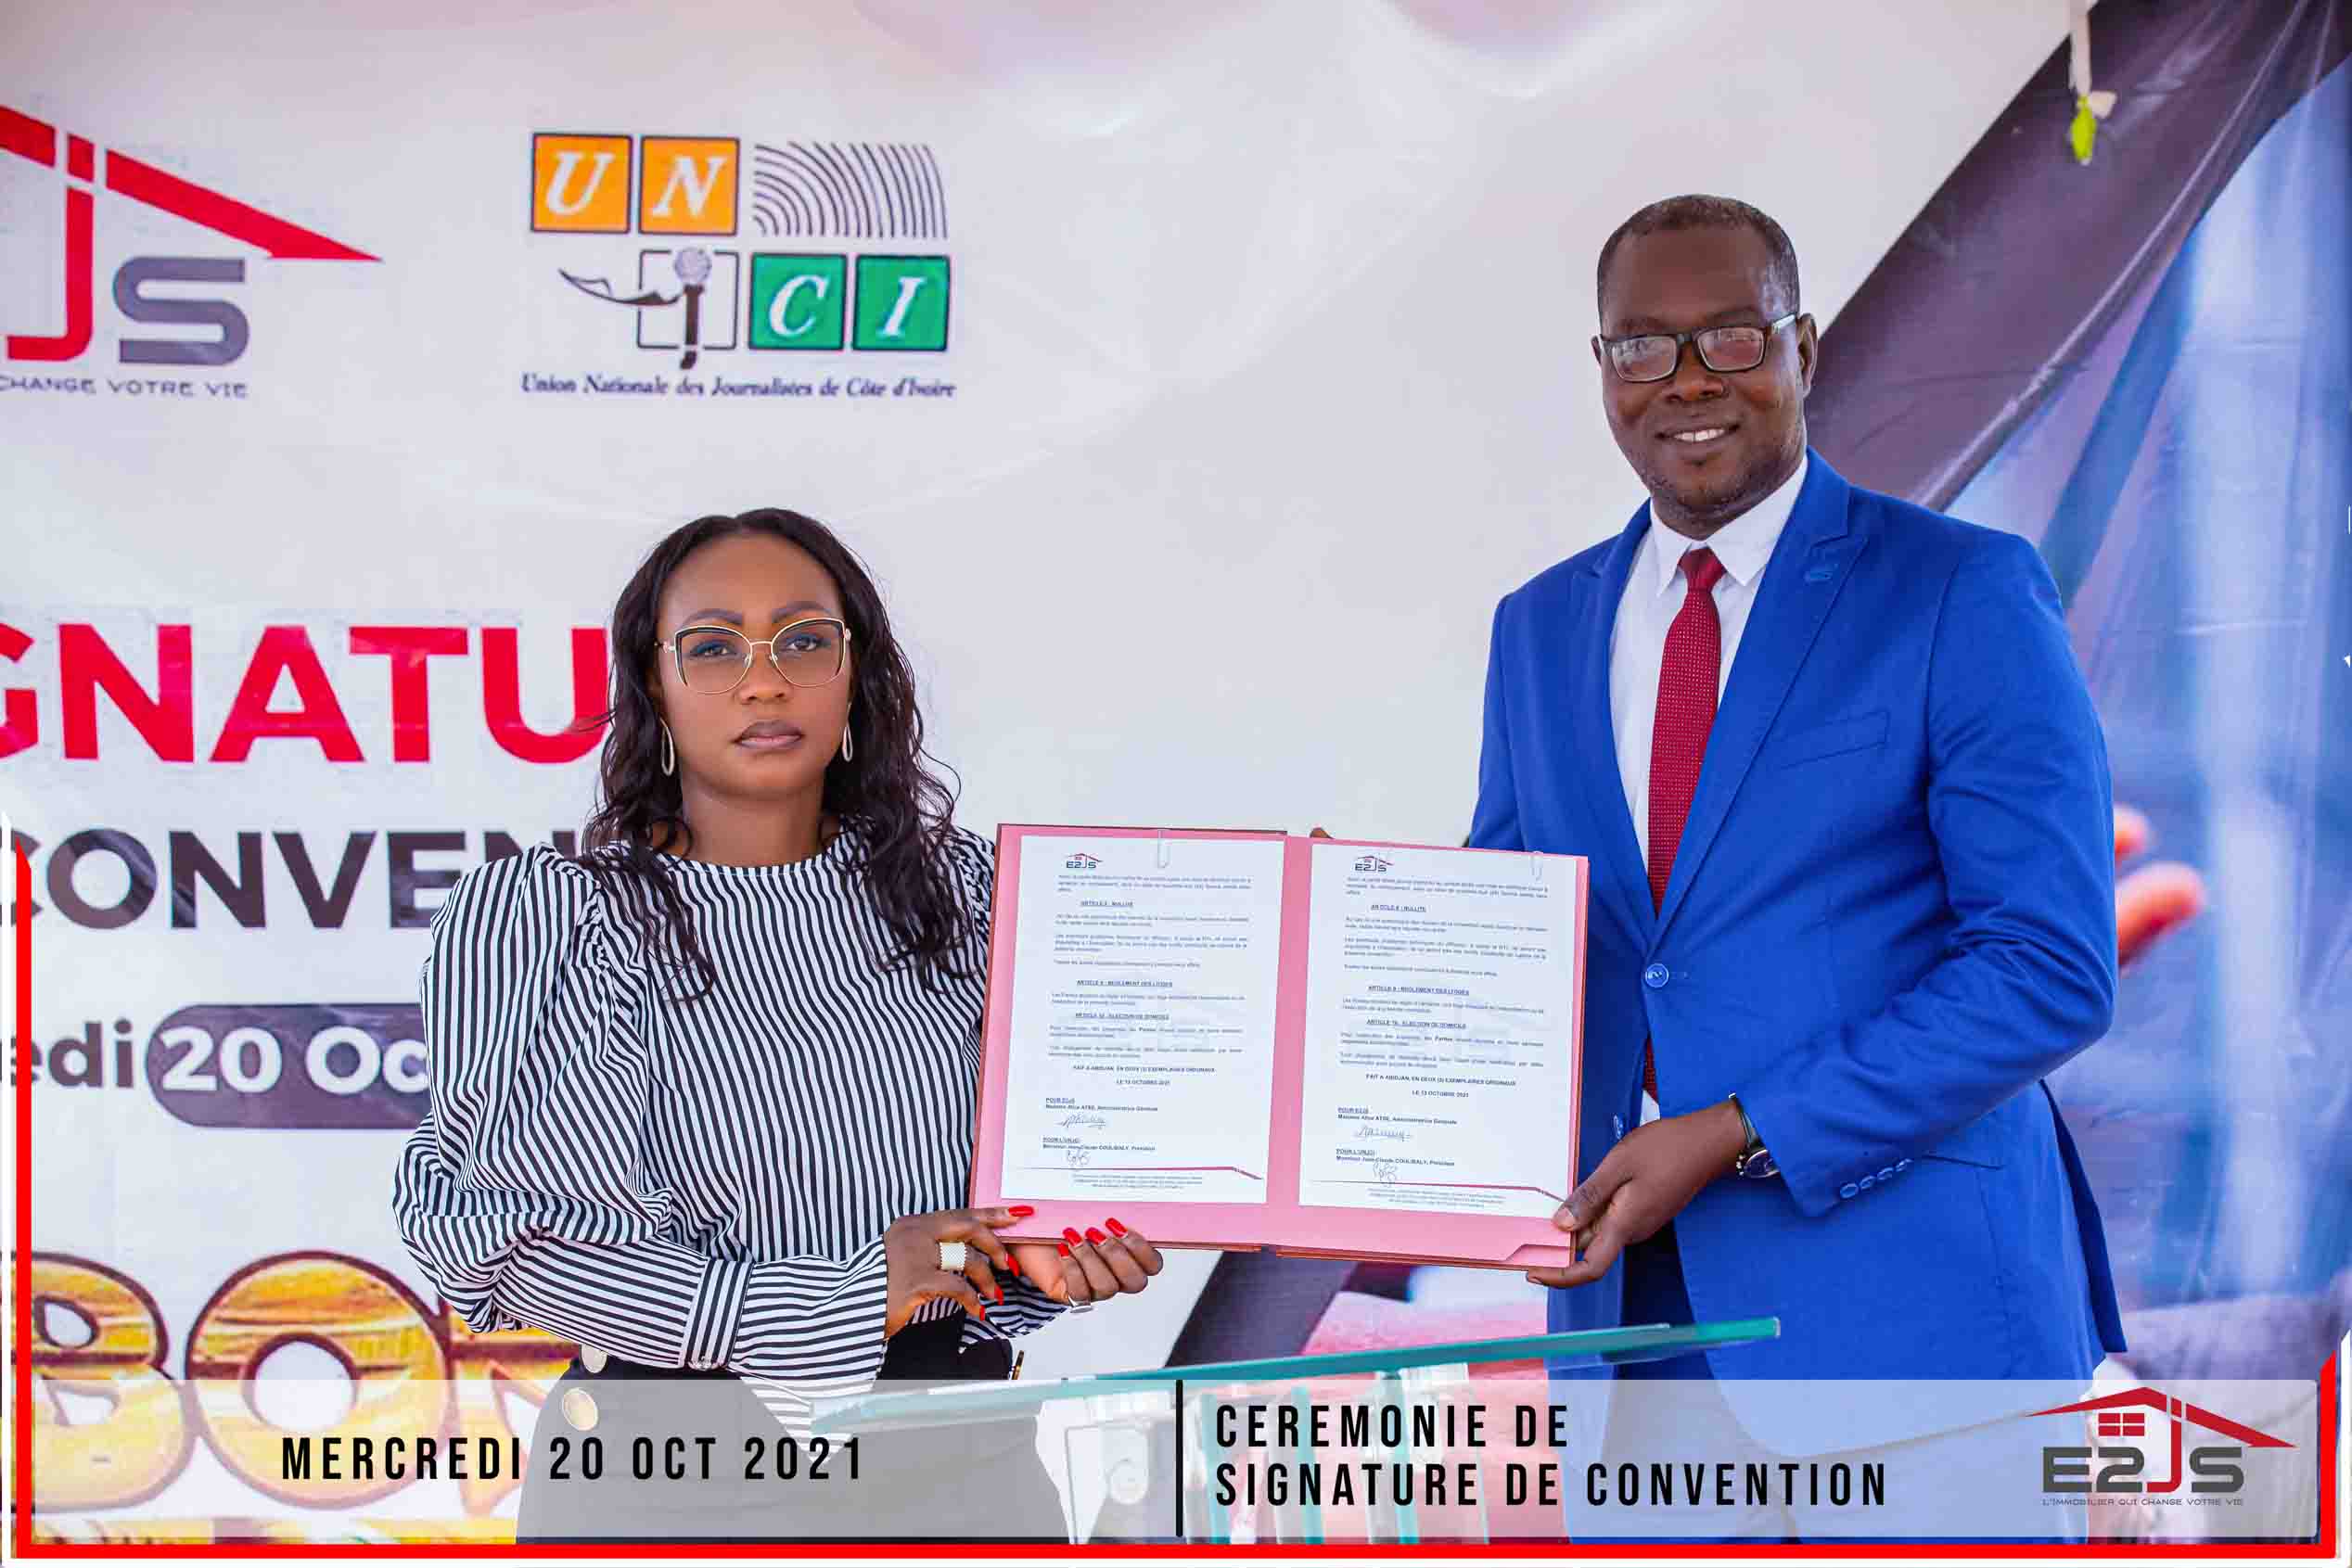 COMMUNIQUE DE PRESSE : Le promoteur immobilier E2JS et l’UNJCI signent un partenariat pour récompenser le Super Ebony 2021